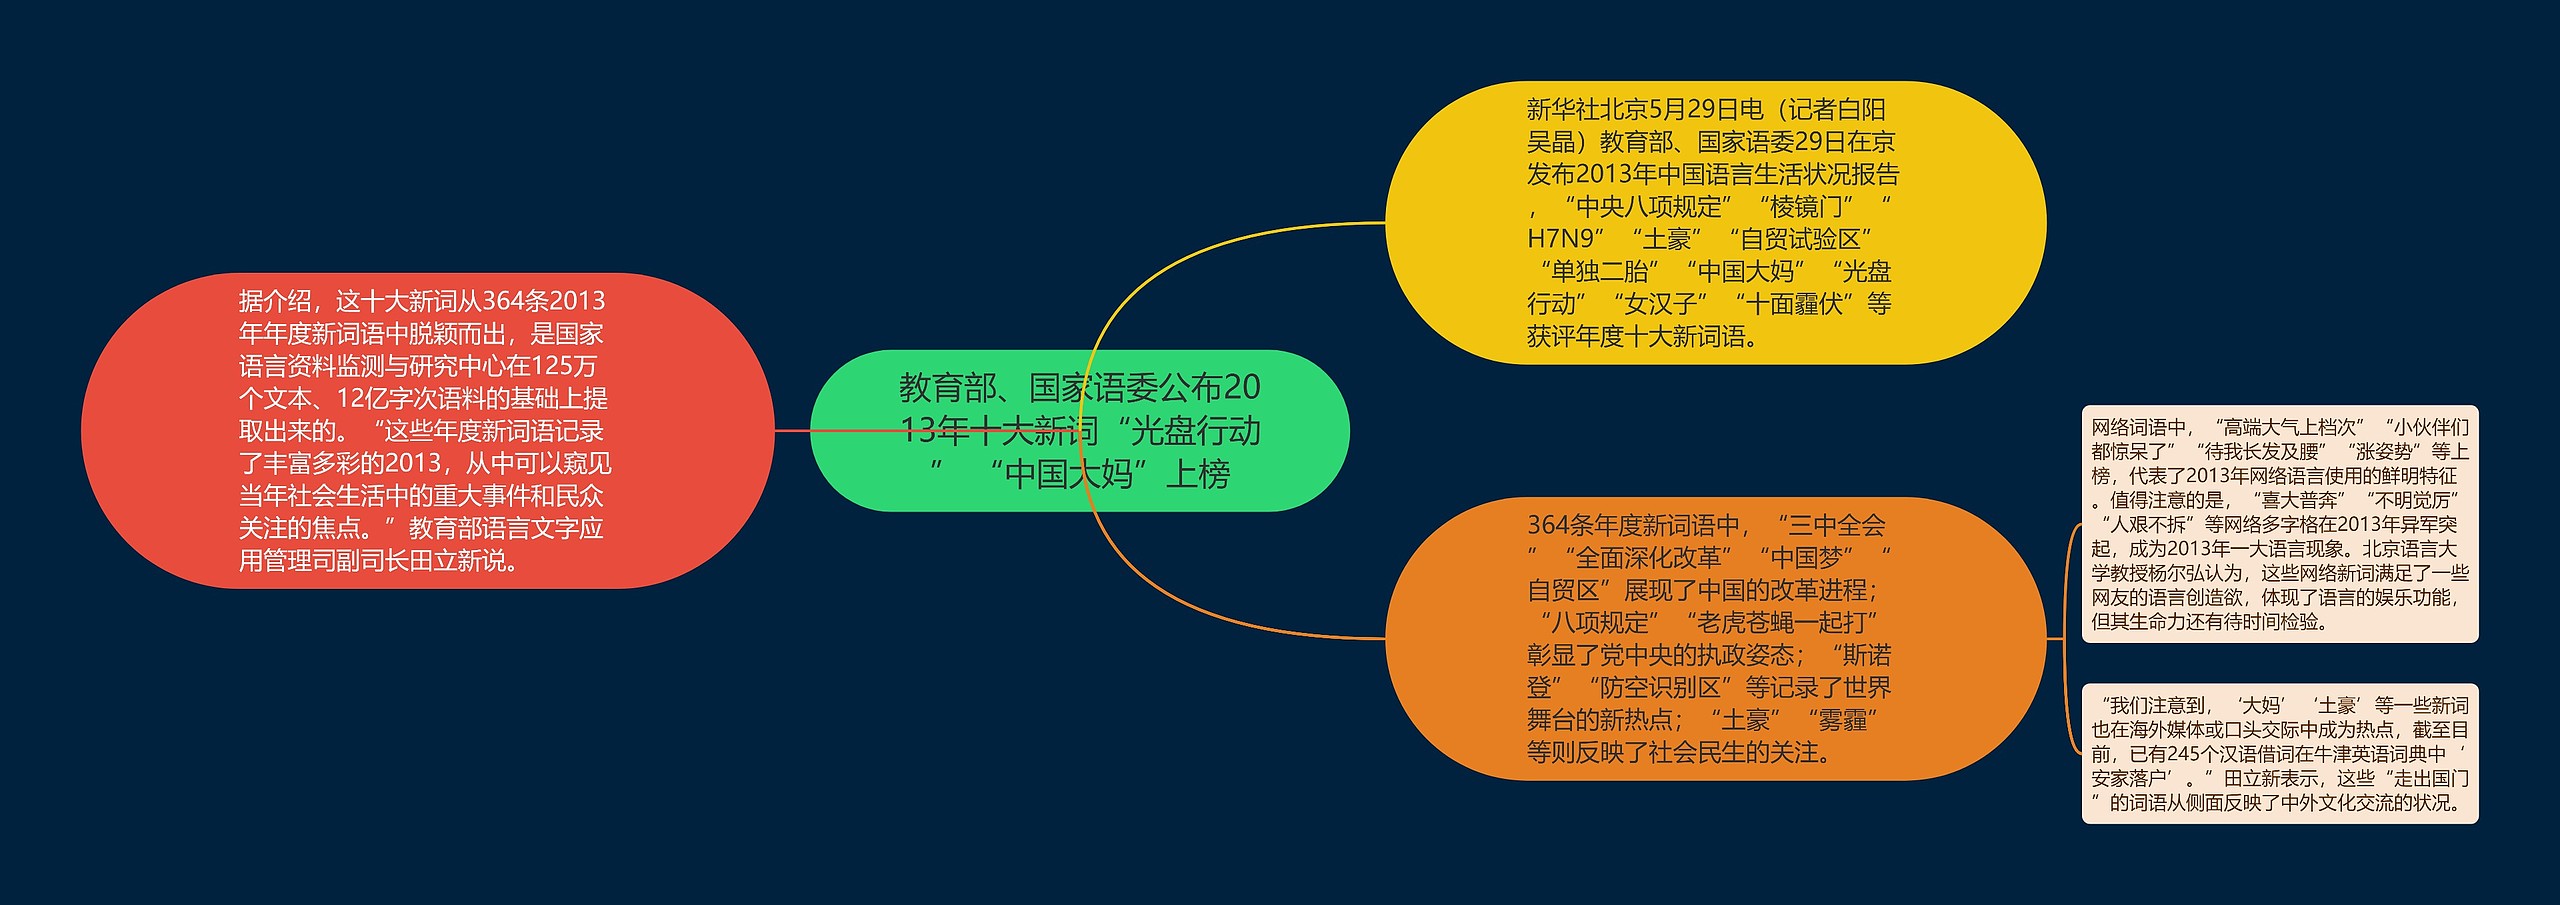 教育部、国家语委公布2013年十大新词“光盘行动” “中国大妈”上榜思维导图